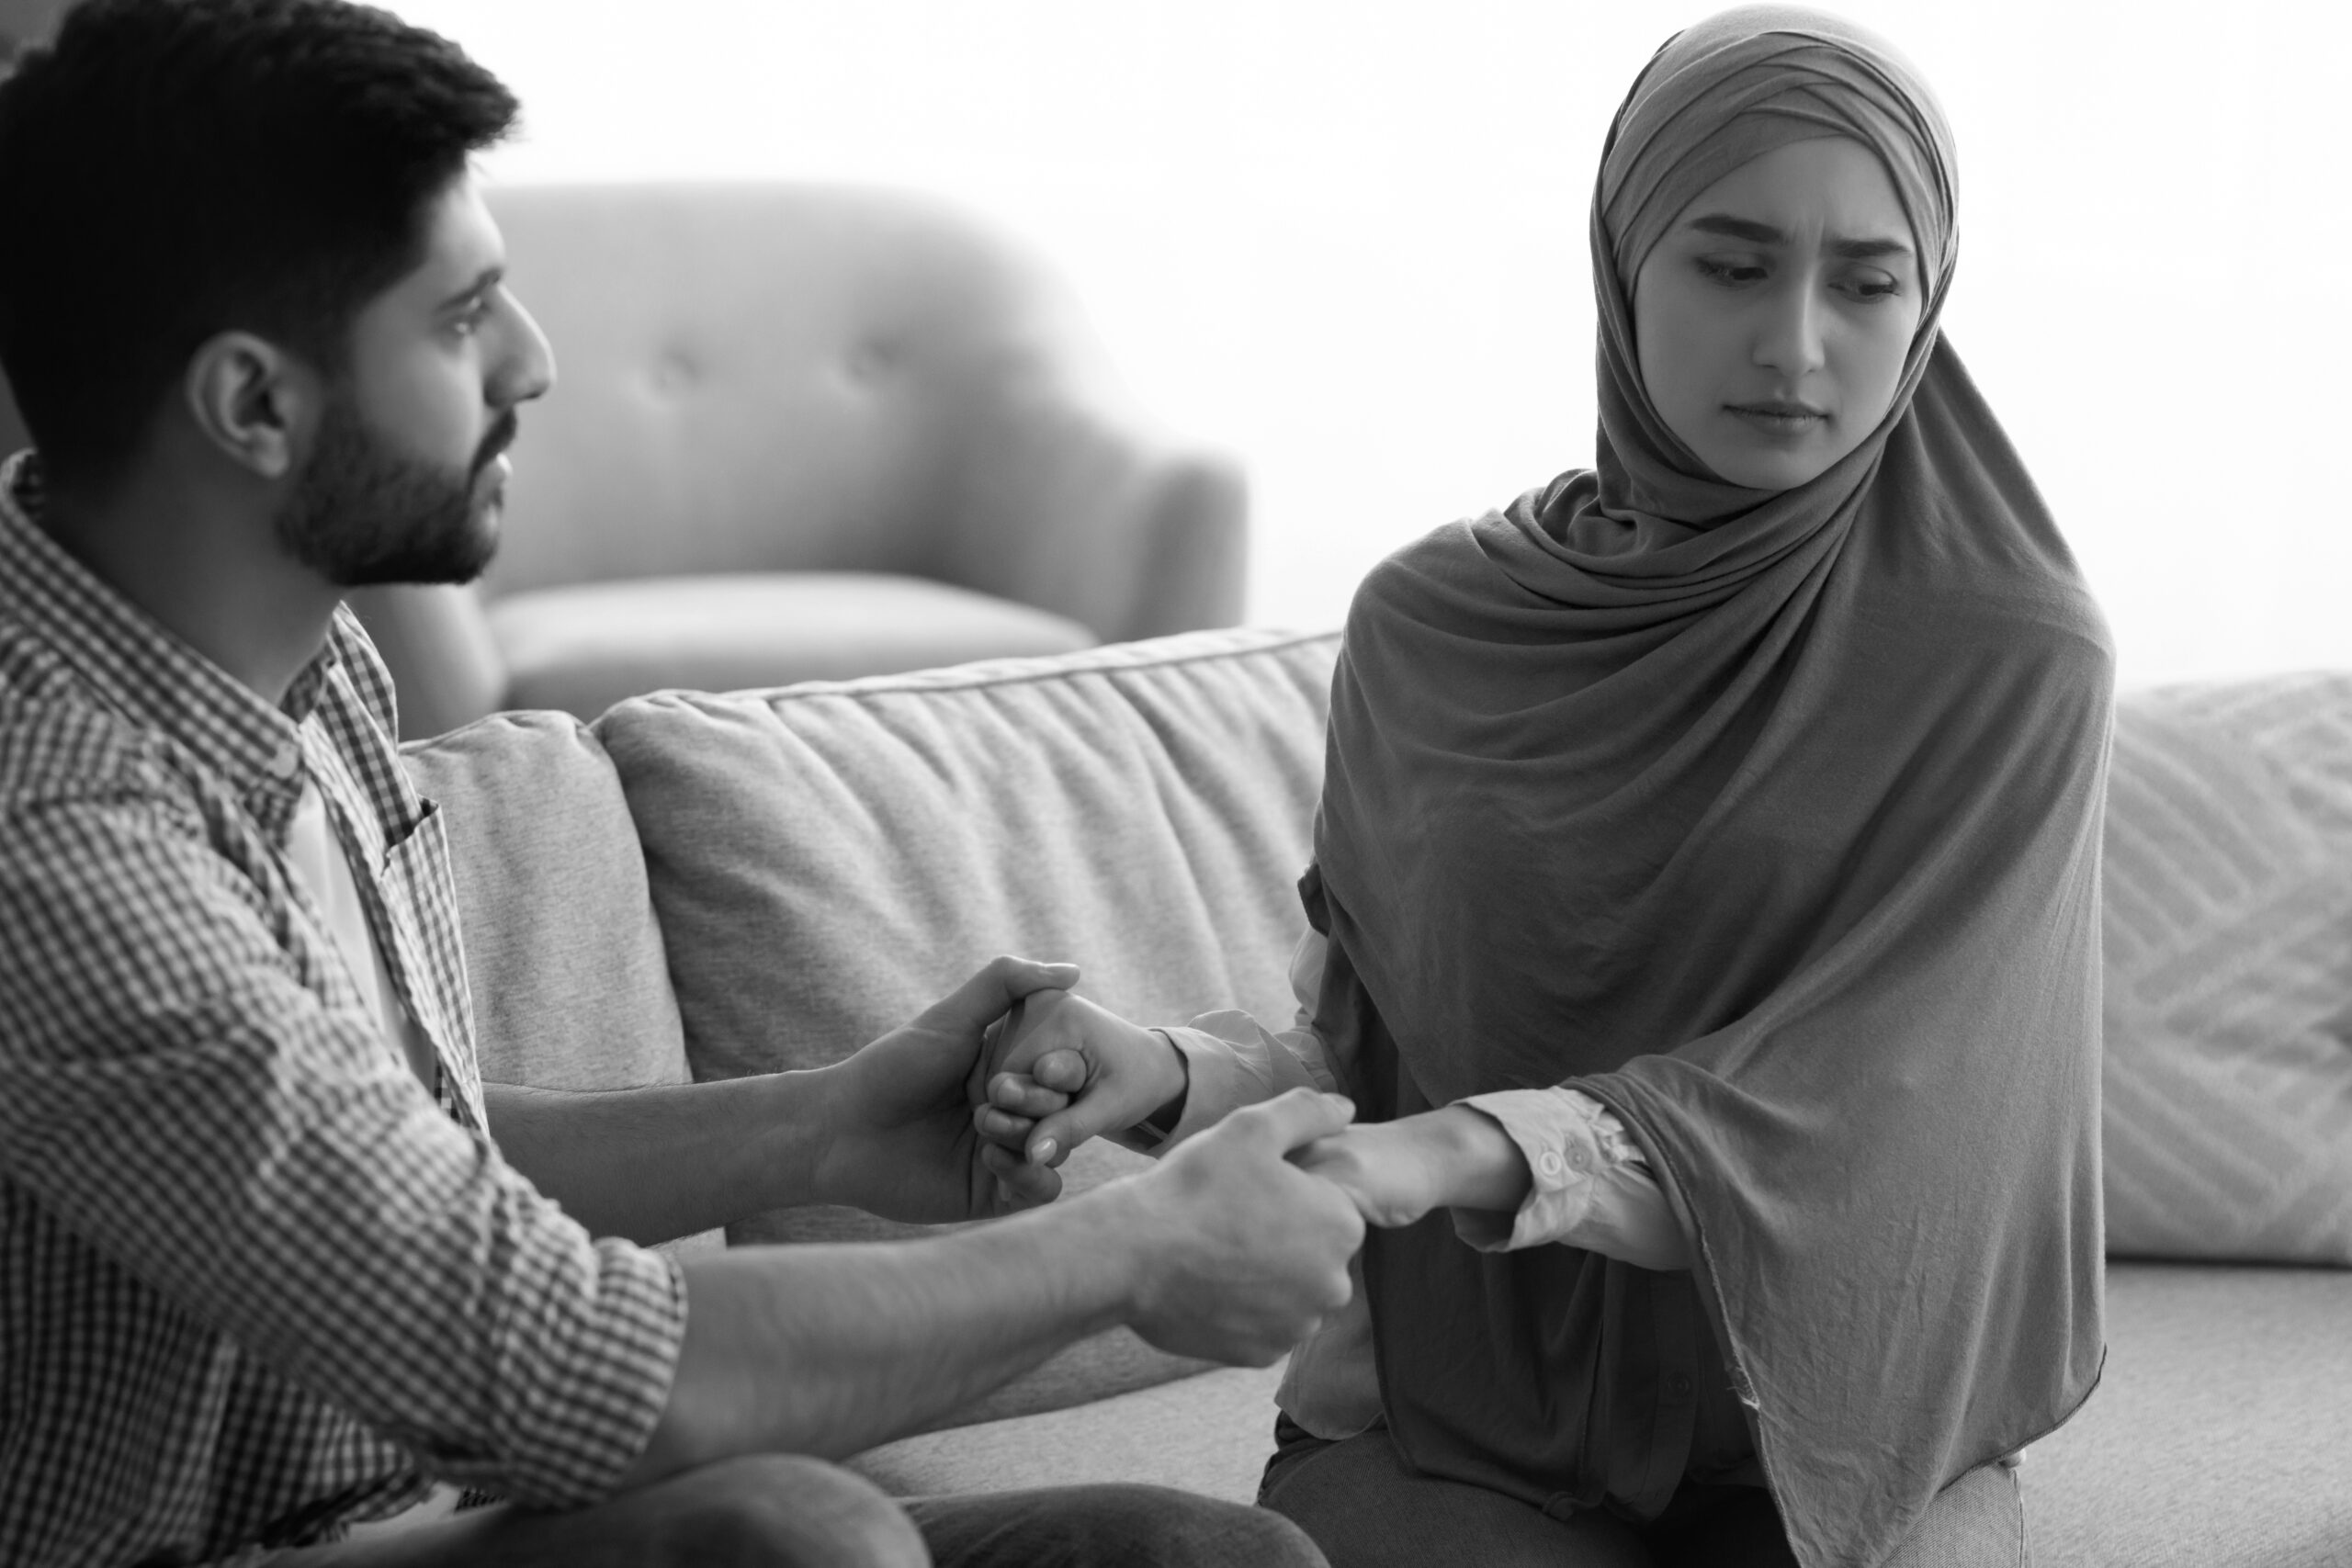 لتفادي الفتور في العلاقة الزوجية خلال رمضان، تجنب هذه الامور